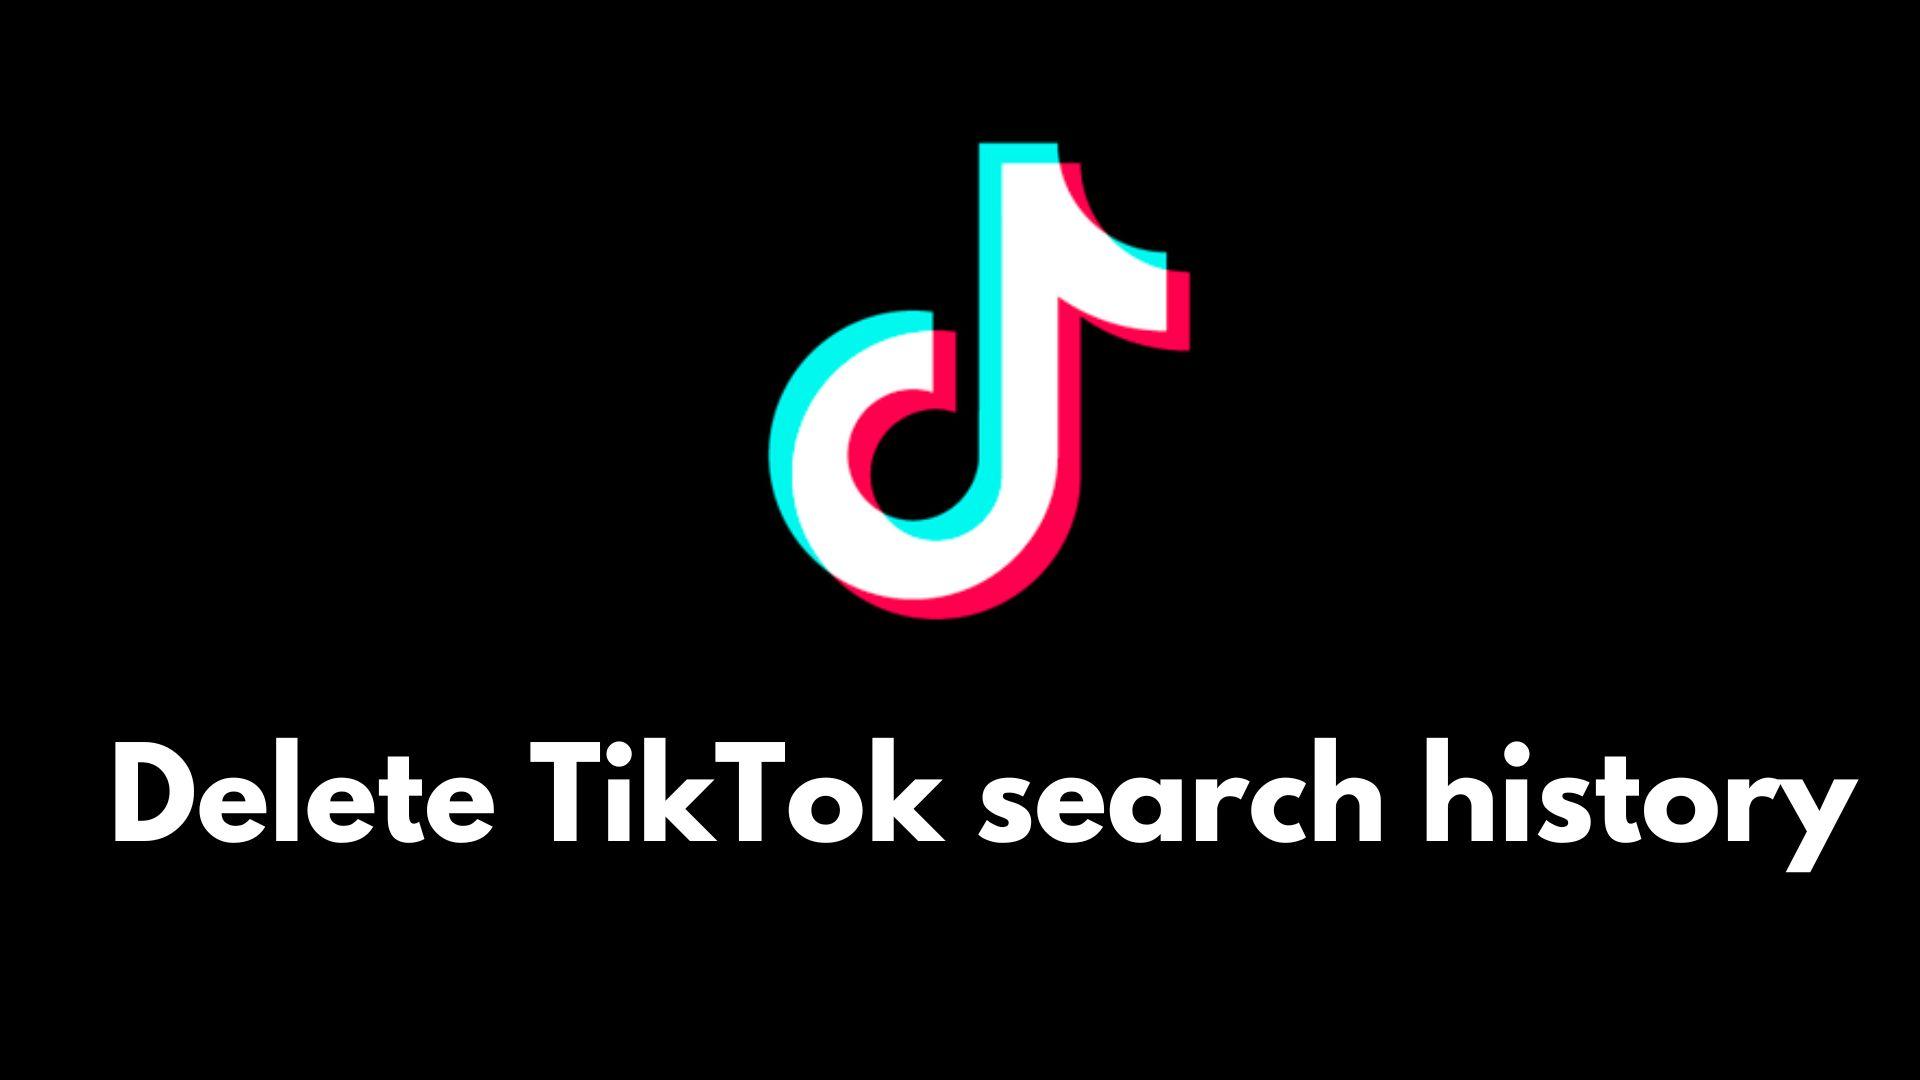 TikTok logo with white delete tiktok search history text underneath